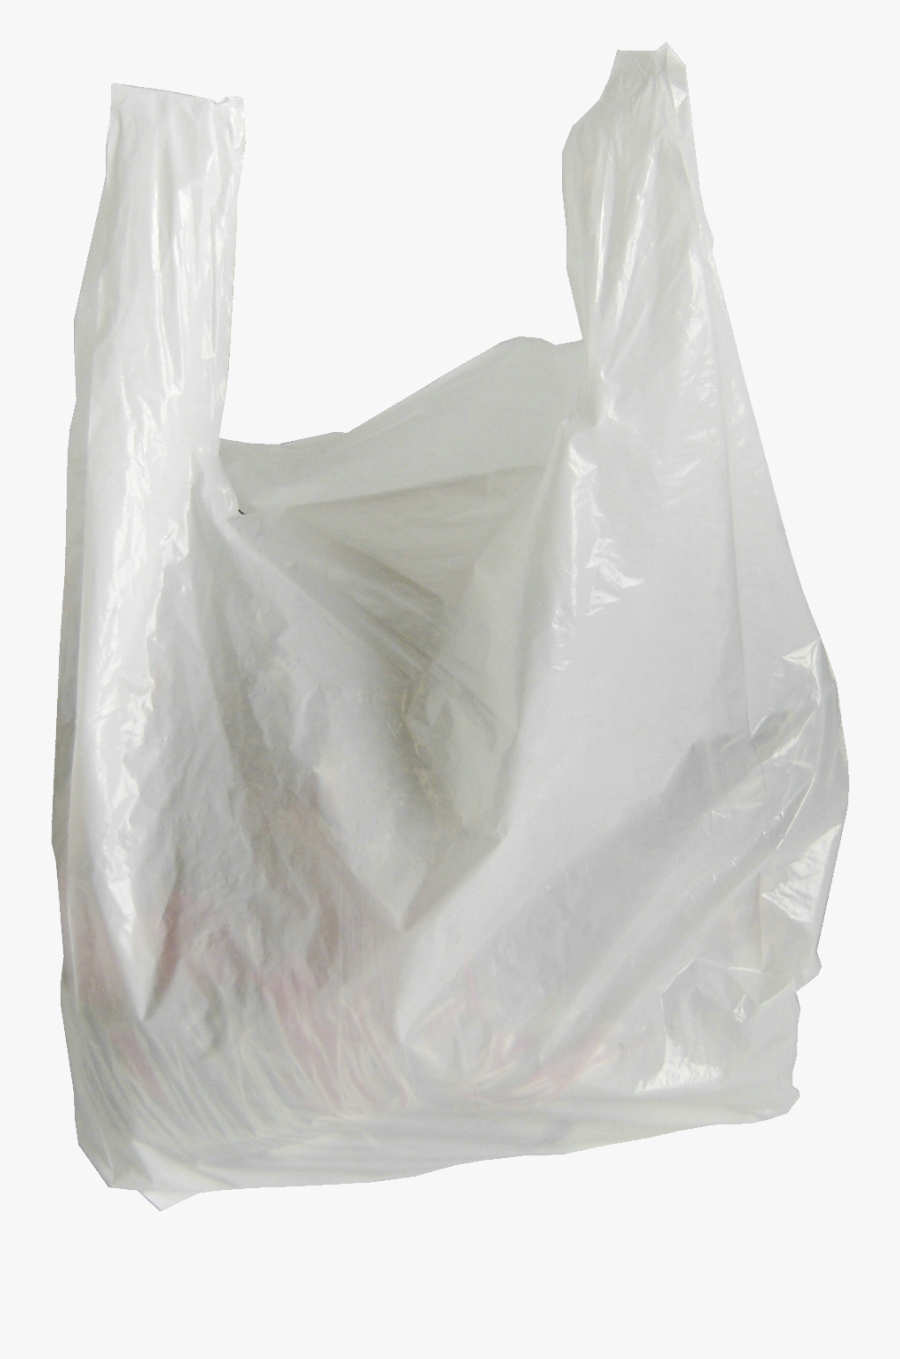 Plastic Bag Png - Transparent Plastic Bag Png, Transparent Clipart